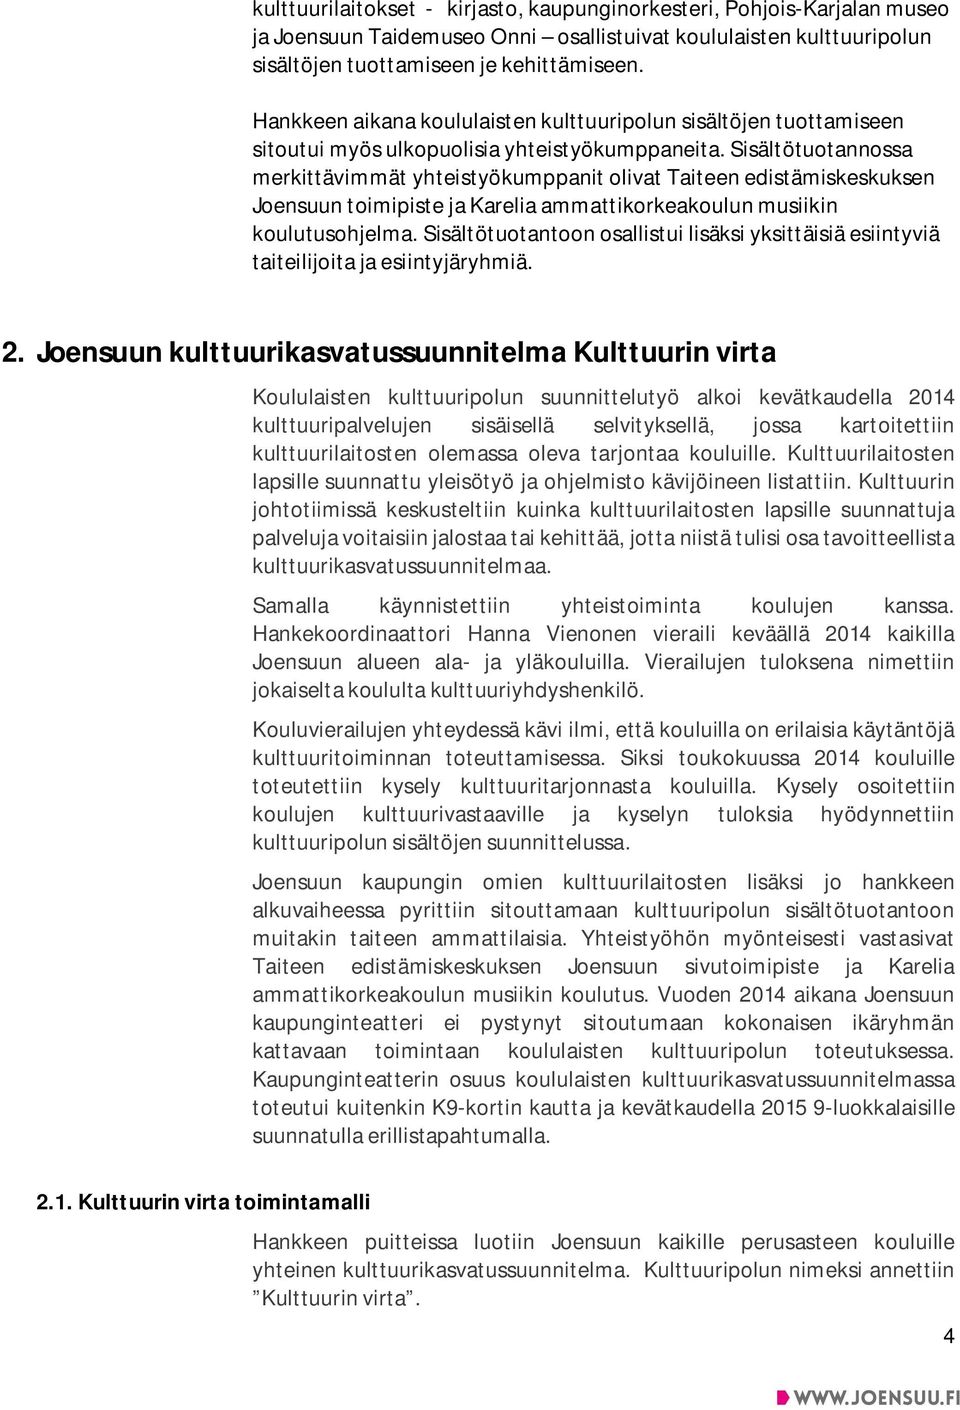 Sisältötuotannossa merkittävimmät yhteistyökumppanit olivat Taiteen edistämiskeskuksen Joensuun toimipiste ja Karelia ammattikorkeakoulun musiikin koulutusohjelma.